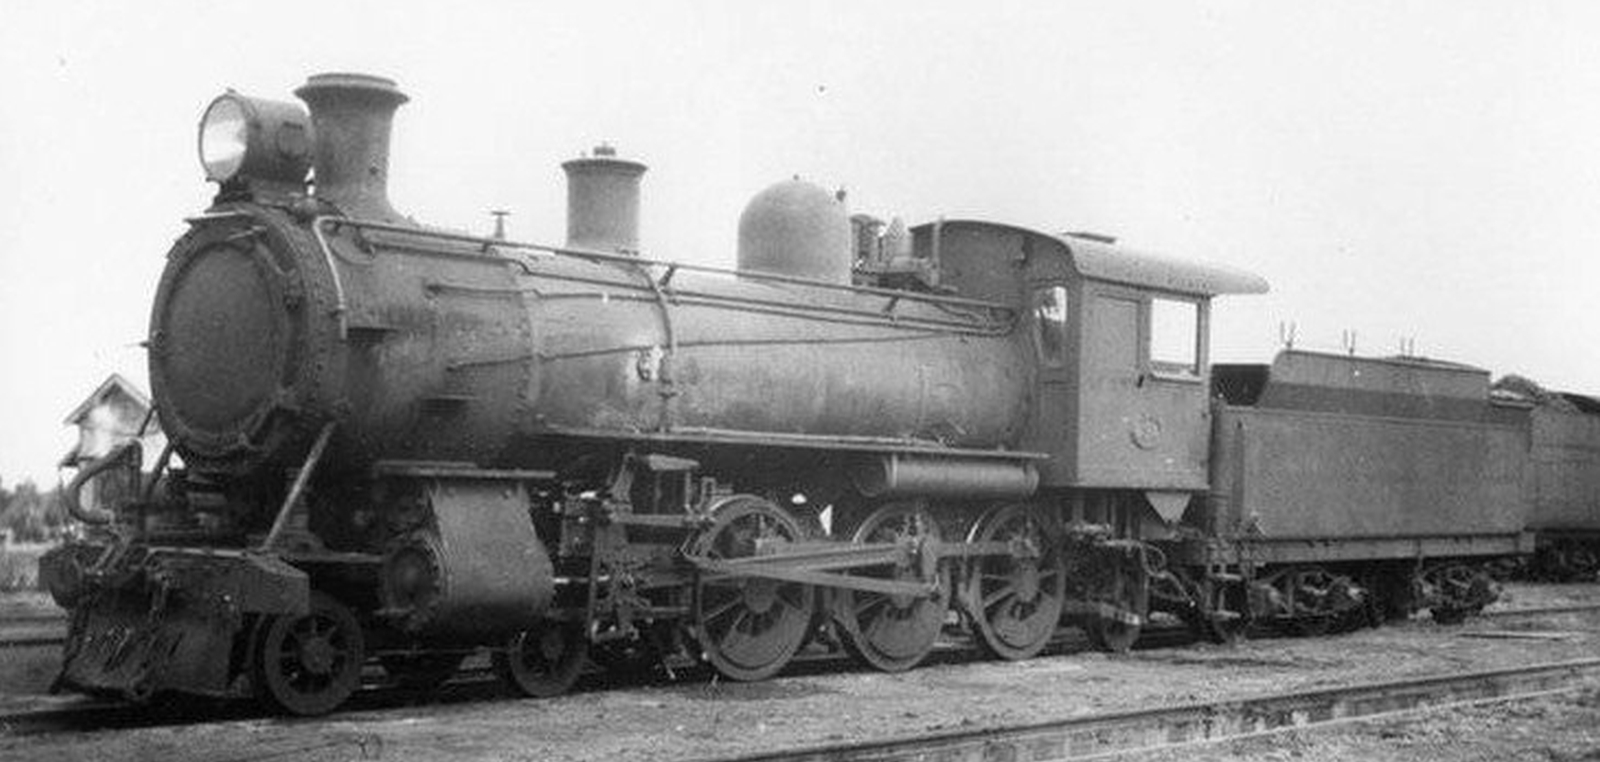 C424 in 1943 in Kalgoorlie